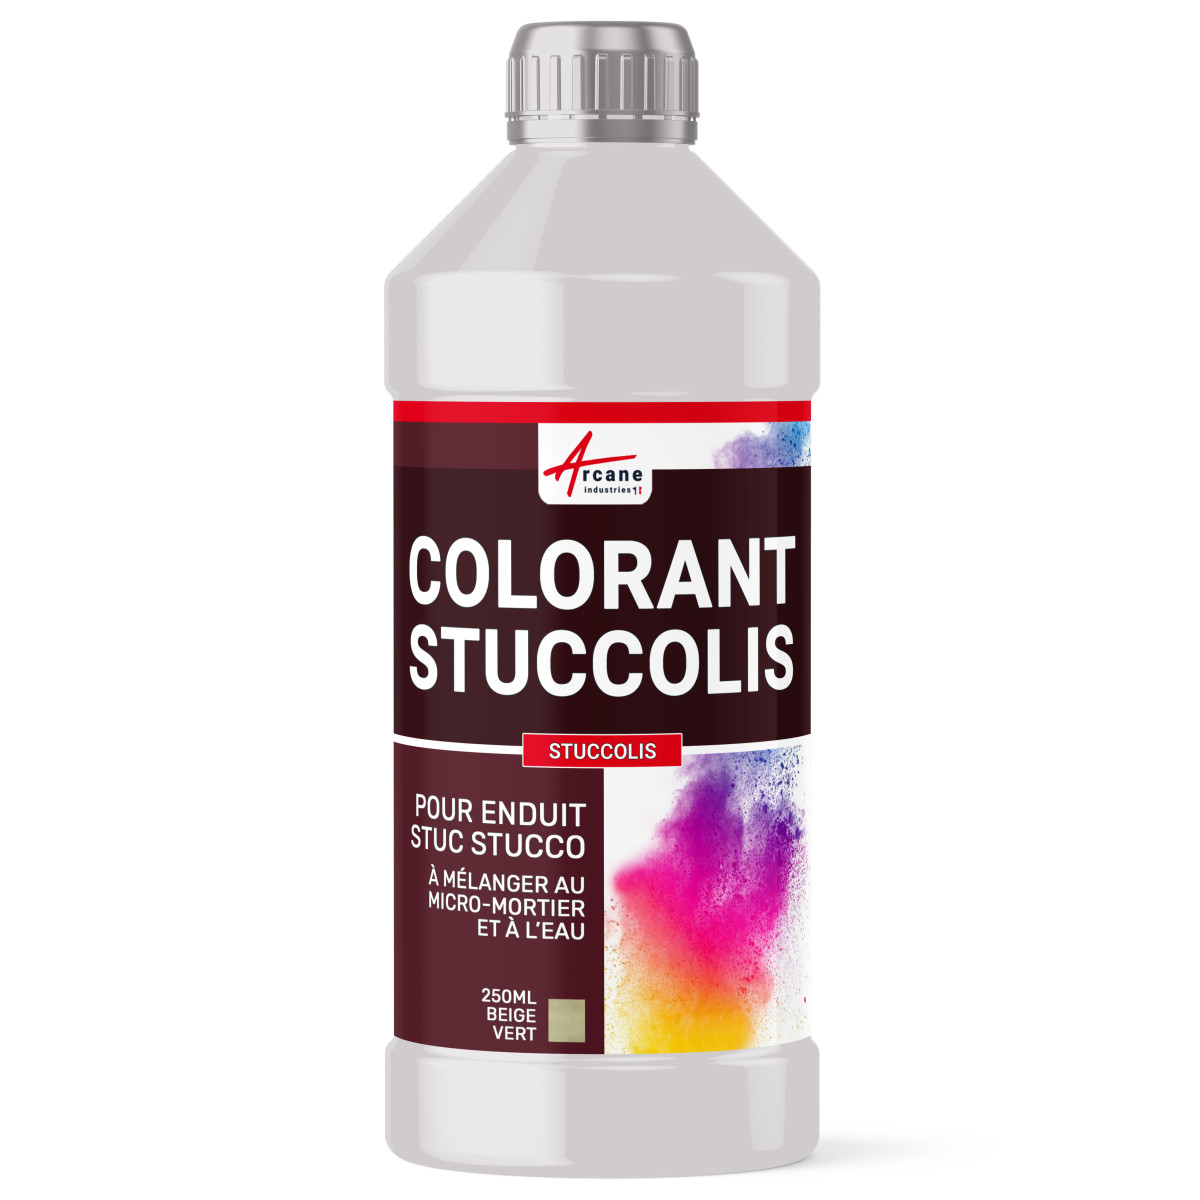 COLORANT STUCCOLIS - dose de colorant pour enduit stuc stucco venitien